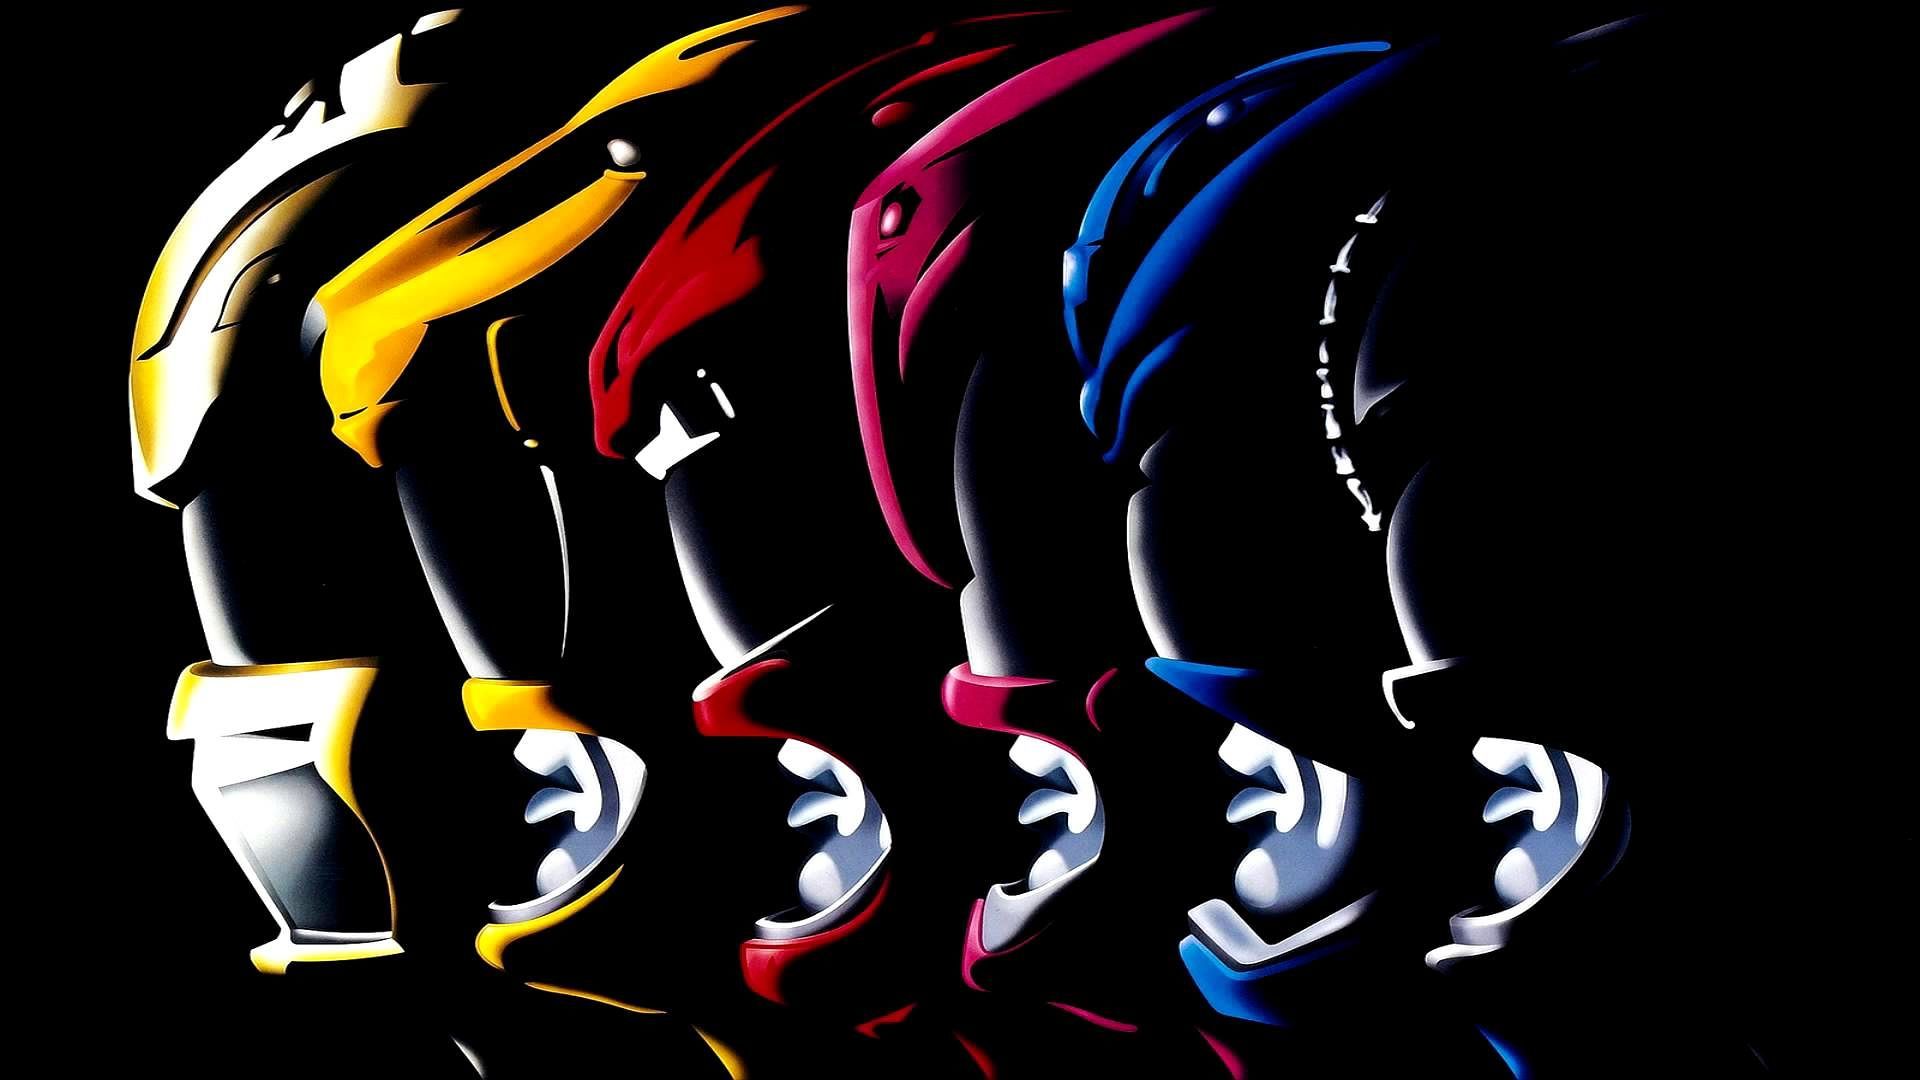 trololo blogg: Power Rangers Spd Wallpaper Image 1920x1080